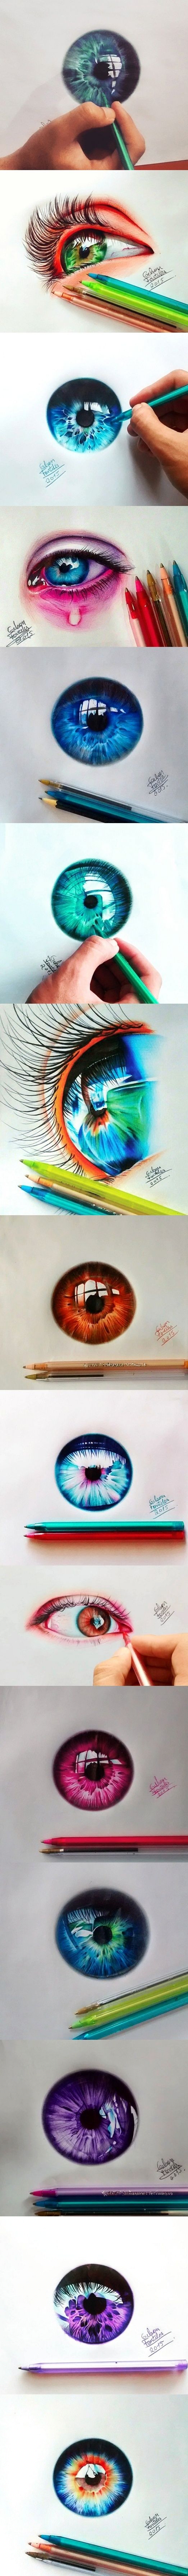 Fascinating Eyes Colors Drawing.jpg